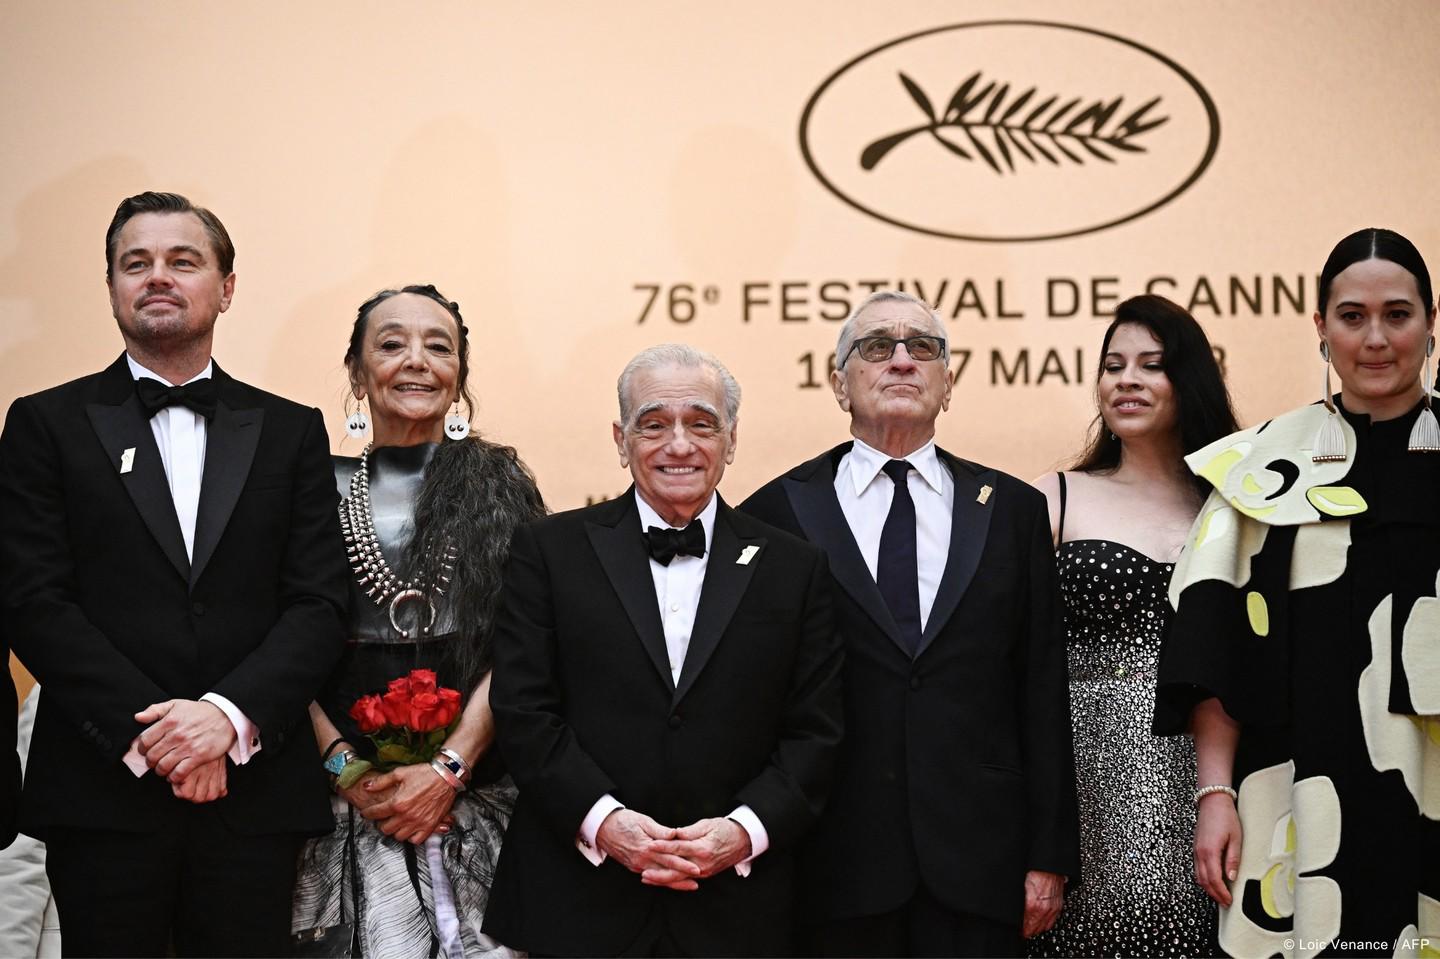 $!El director con el elenco de su más reciente película, estrenada en Cannes.